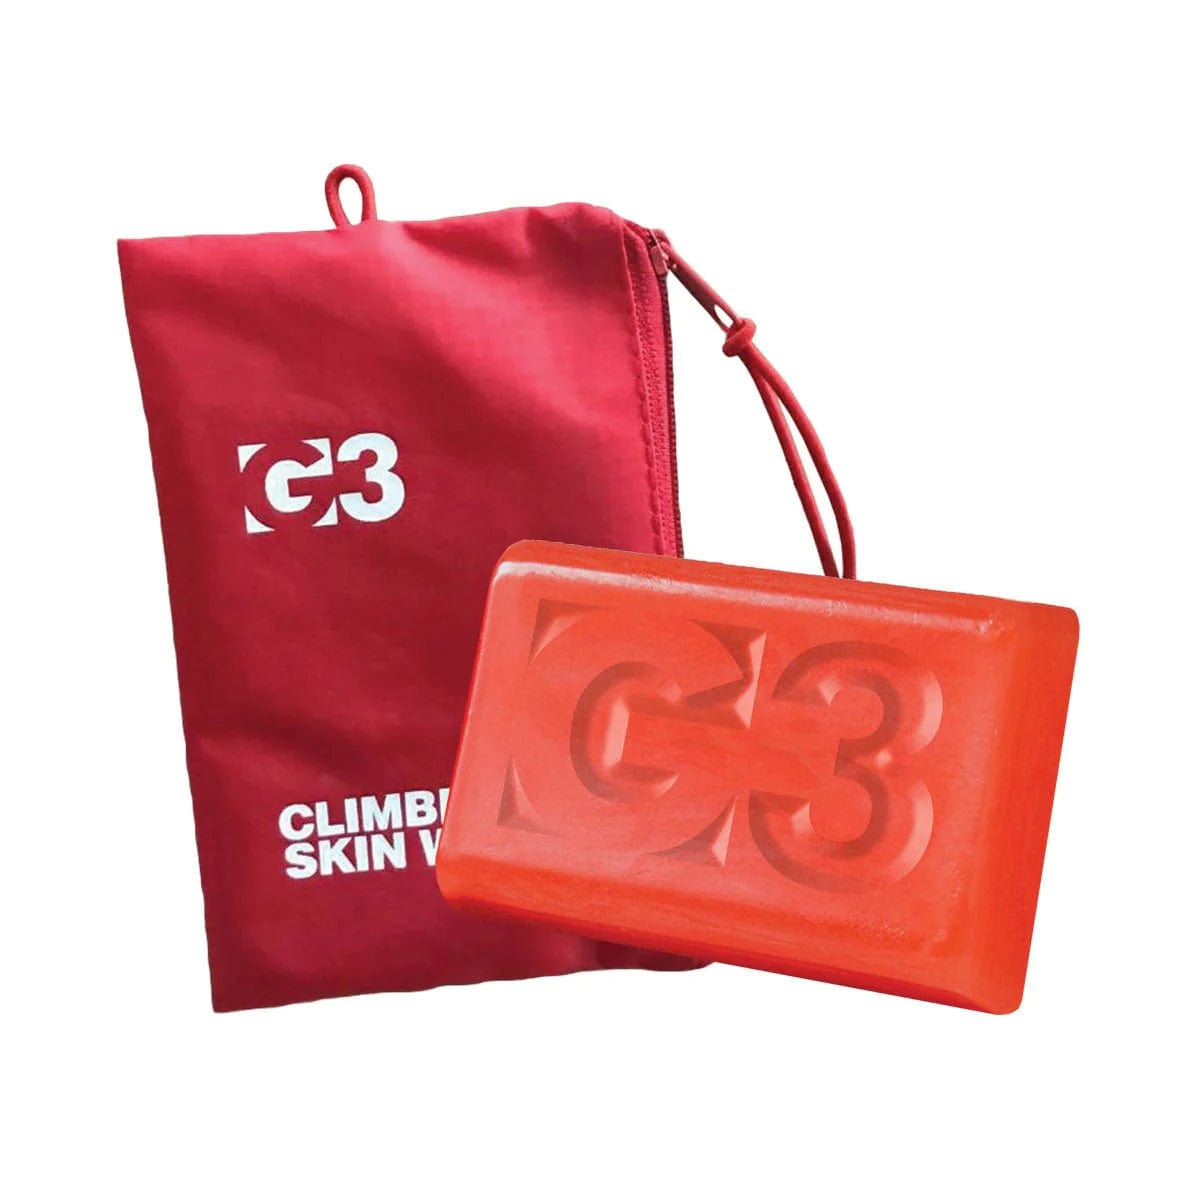 G3 Climbing Skins Plant Based Skin Wax Kit